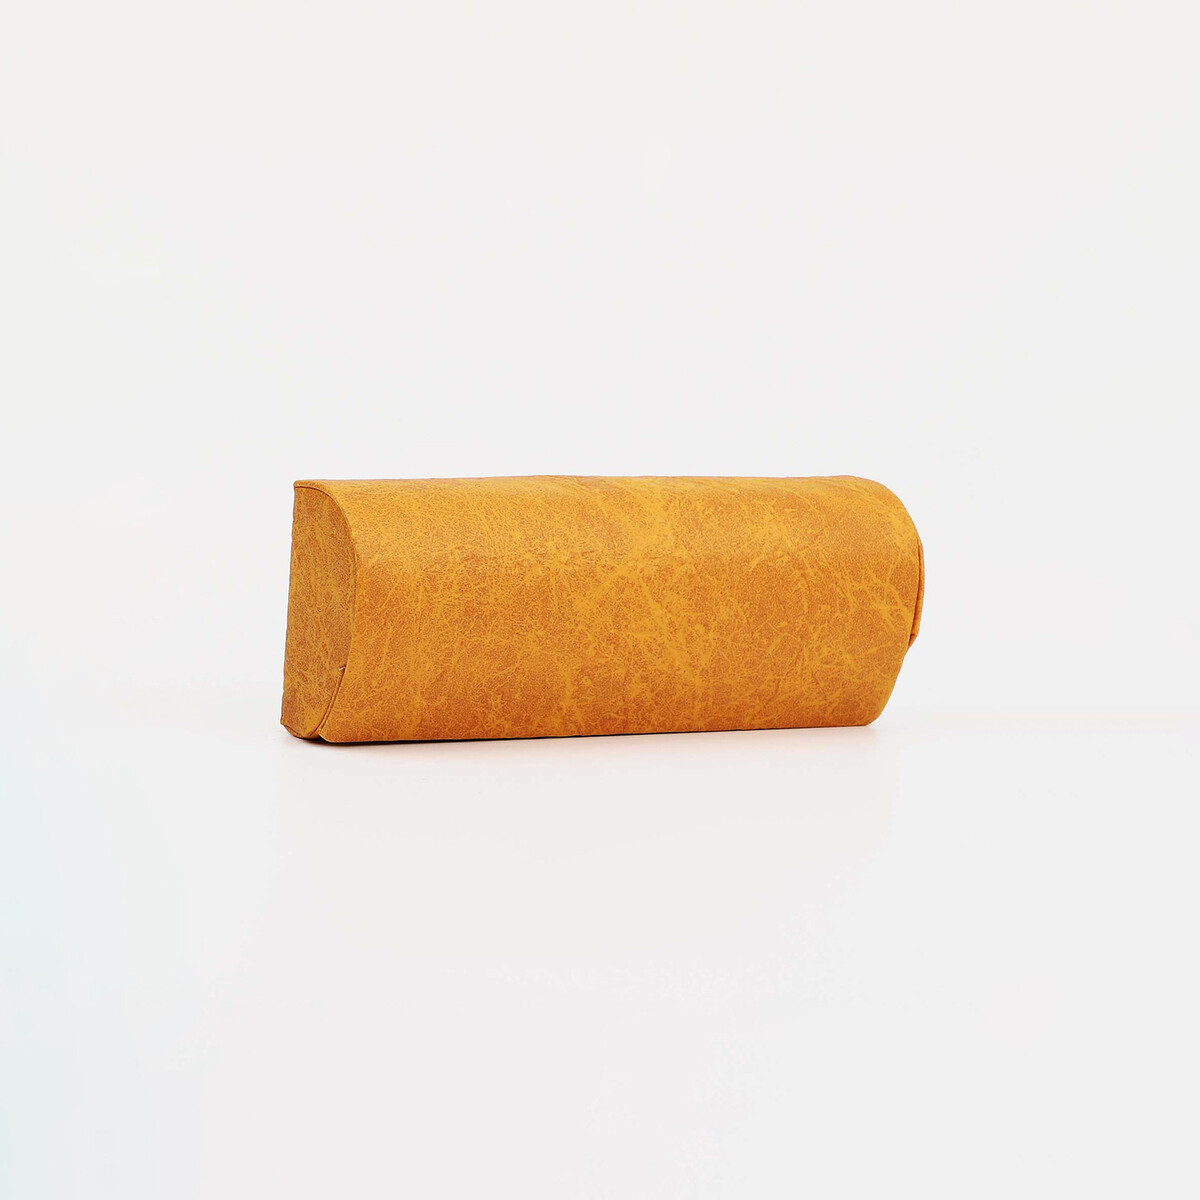 Футляр для очков на магните, 15.5 см х 3.5 см х 6 см, салфетка, цвет оранжевый футляр для очков молнии 17 × 7 × 5 см оранжевый